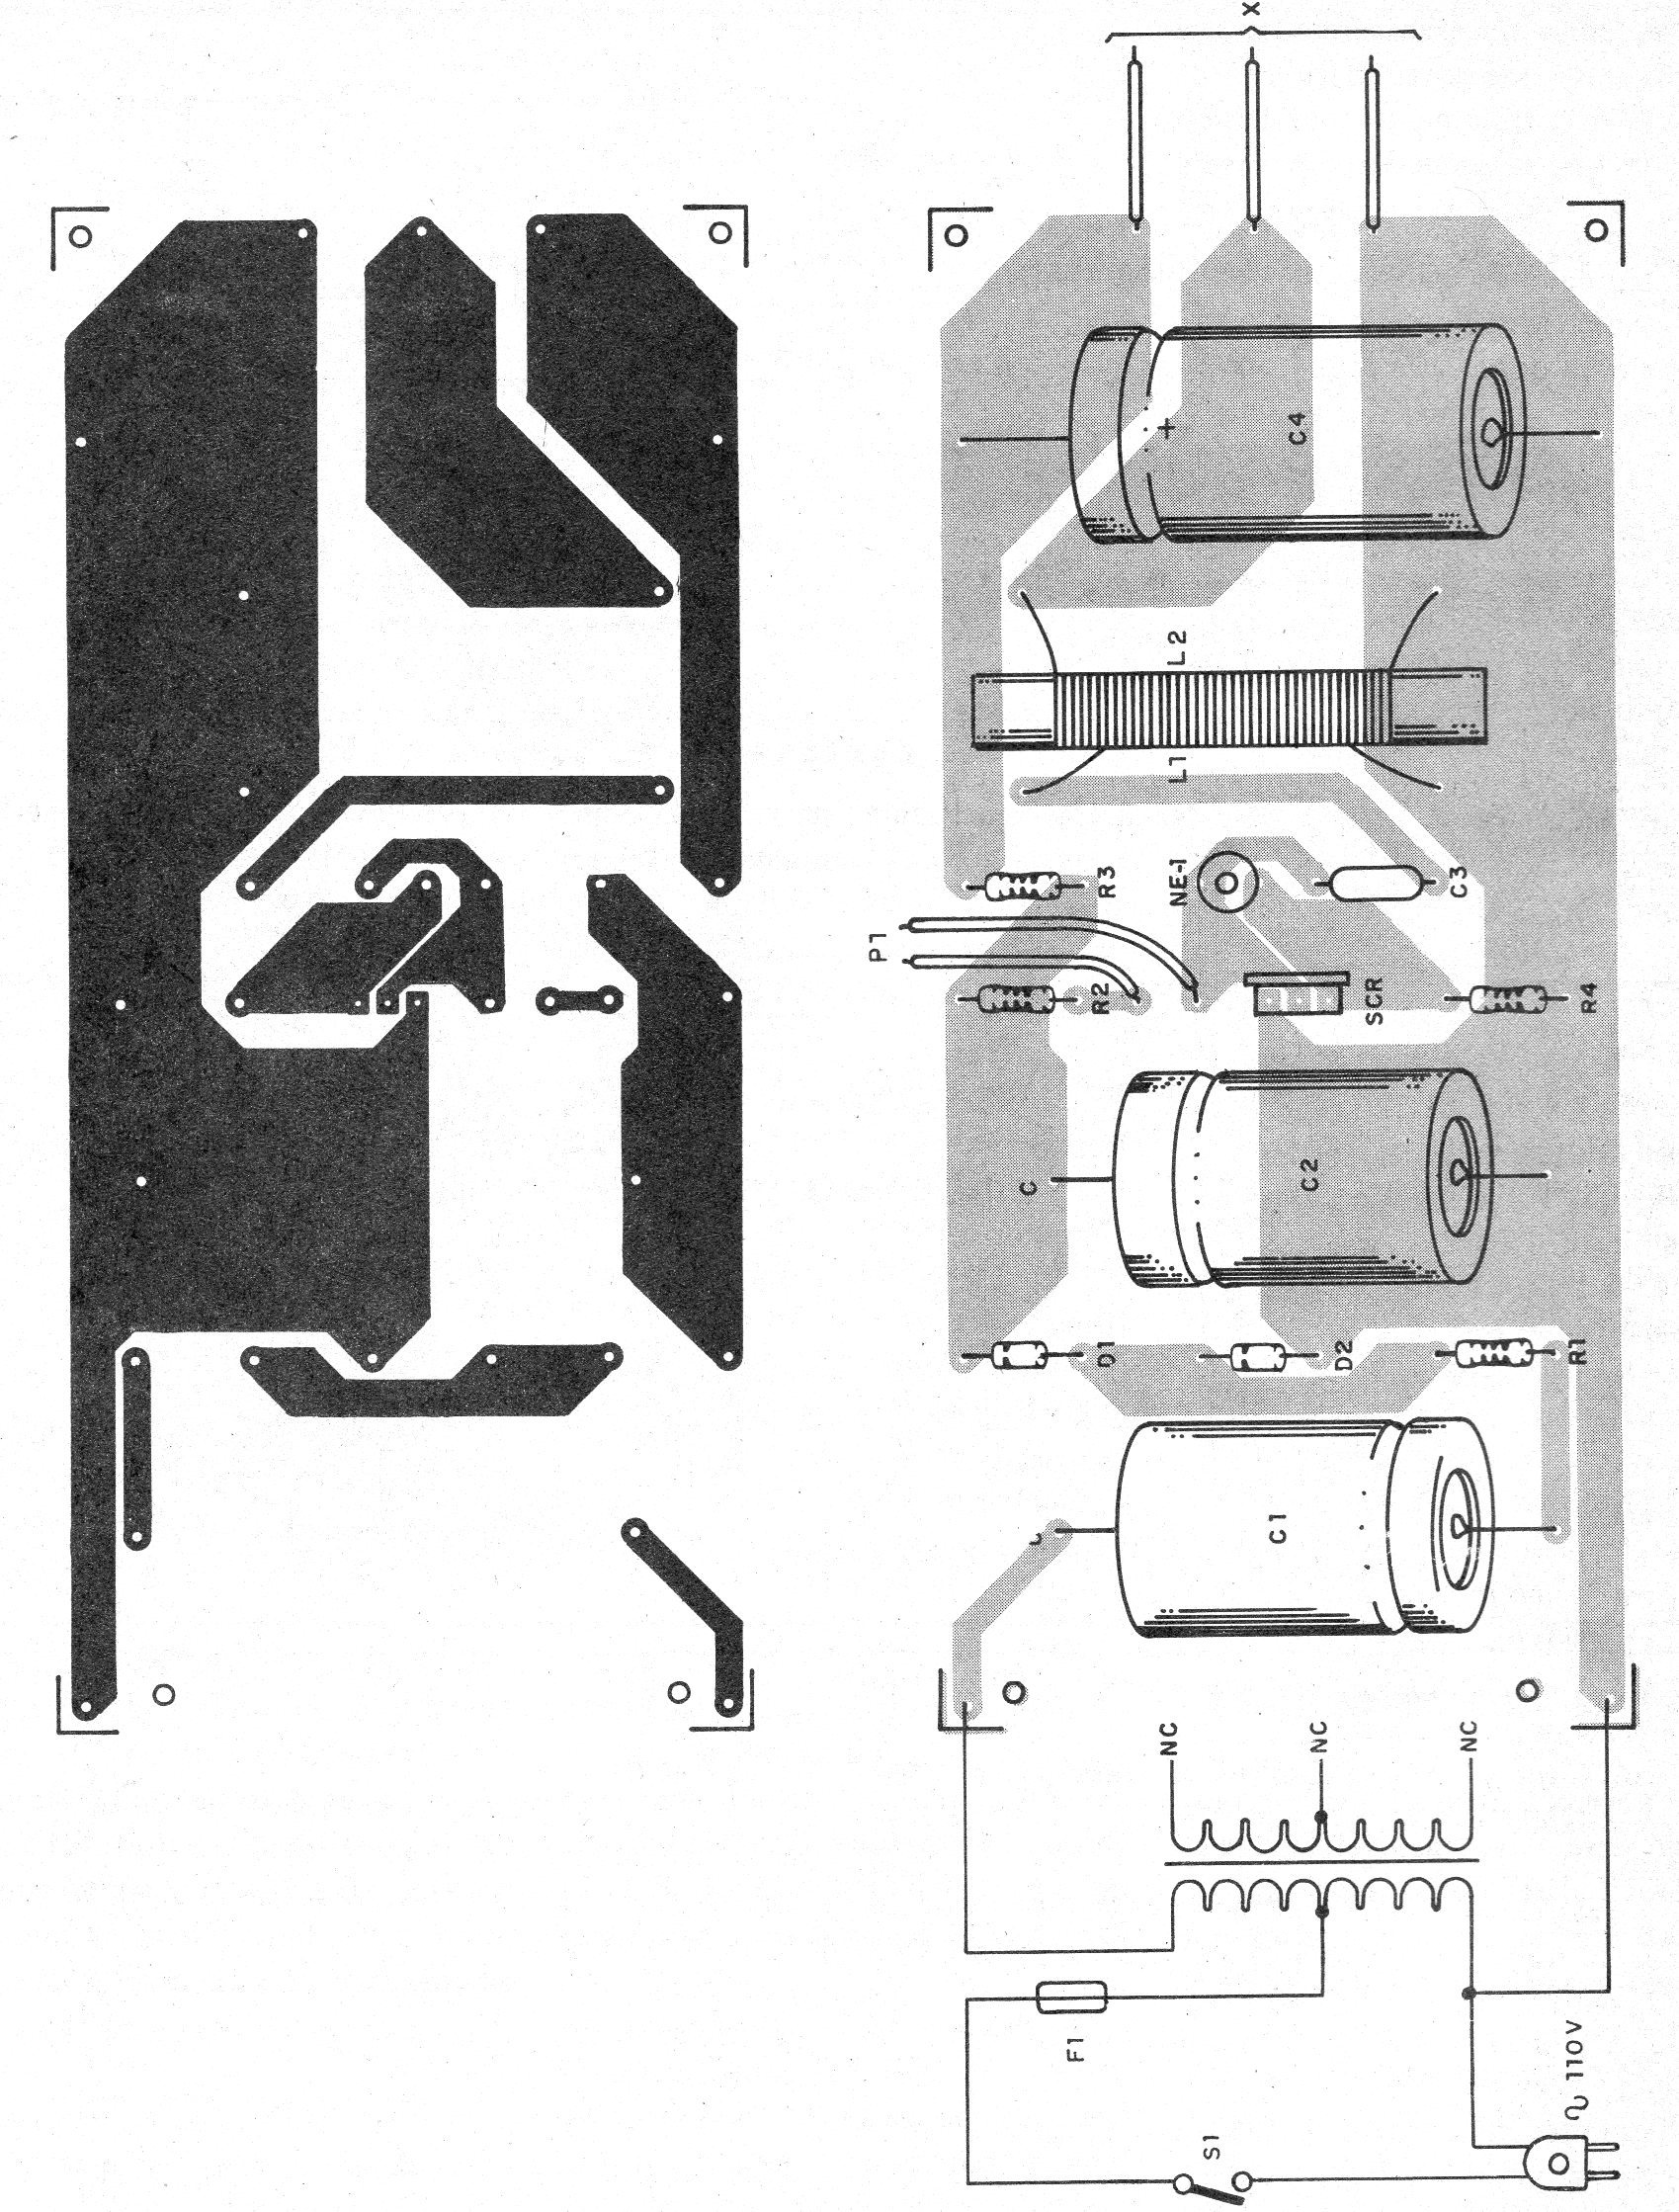     Figura 5 – Placa de circuito impresso para a versão de 110 V
